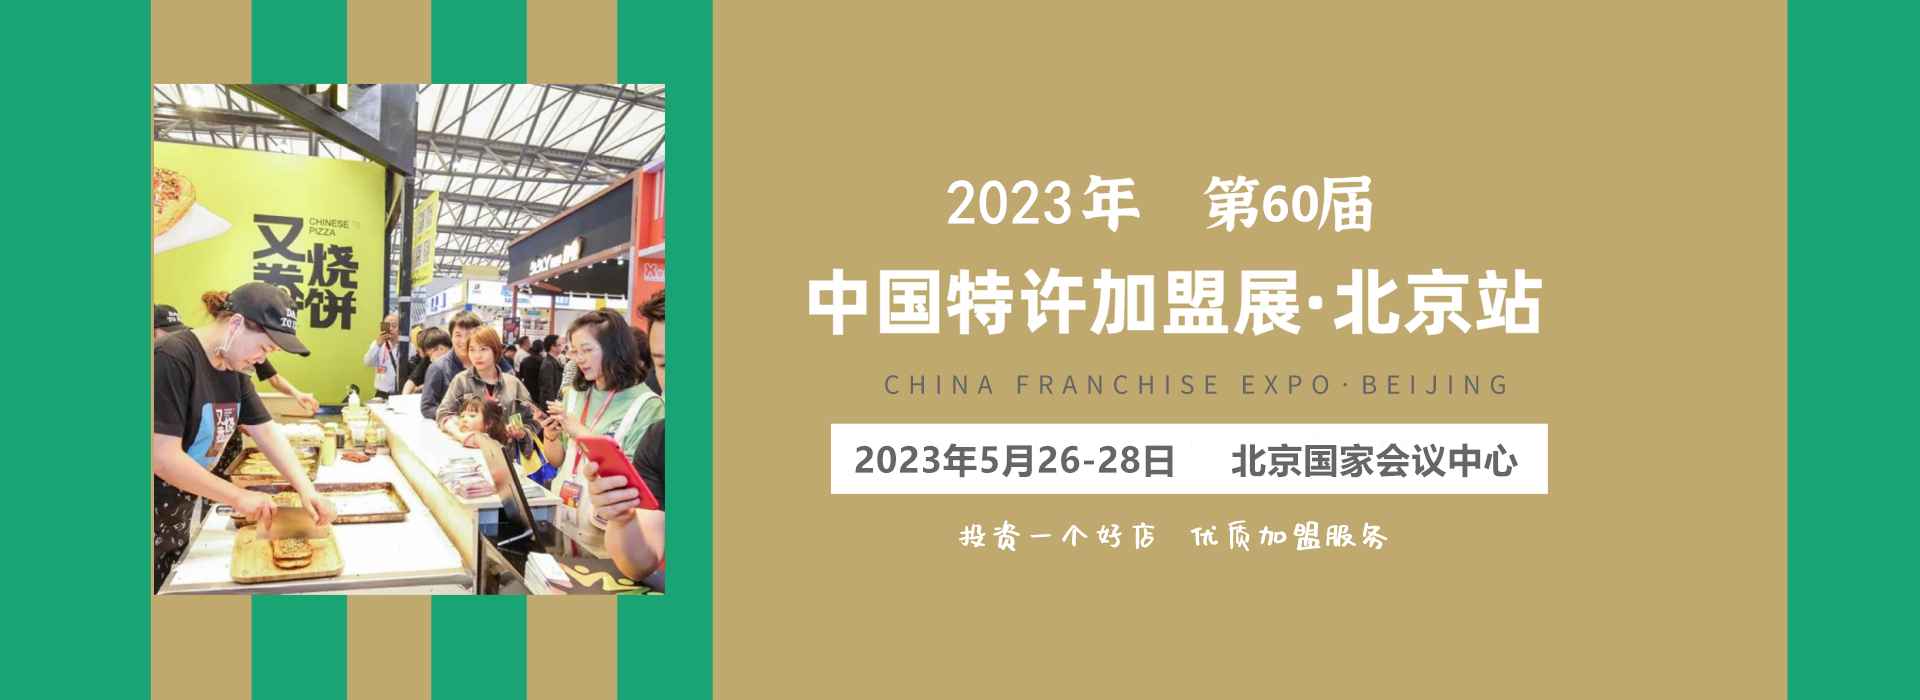 2023第60届北京特许加盟展览会【CCFA中国特许加盟展】